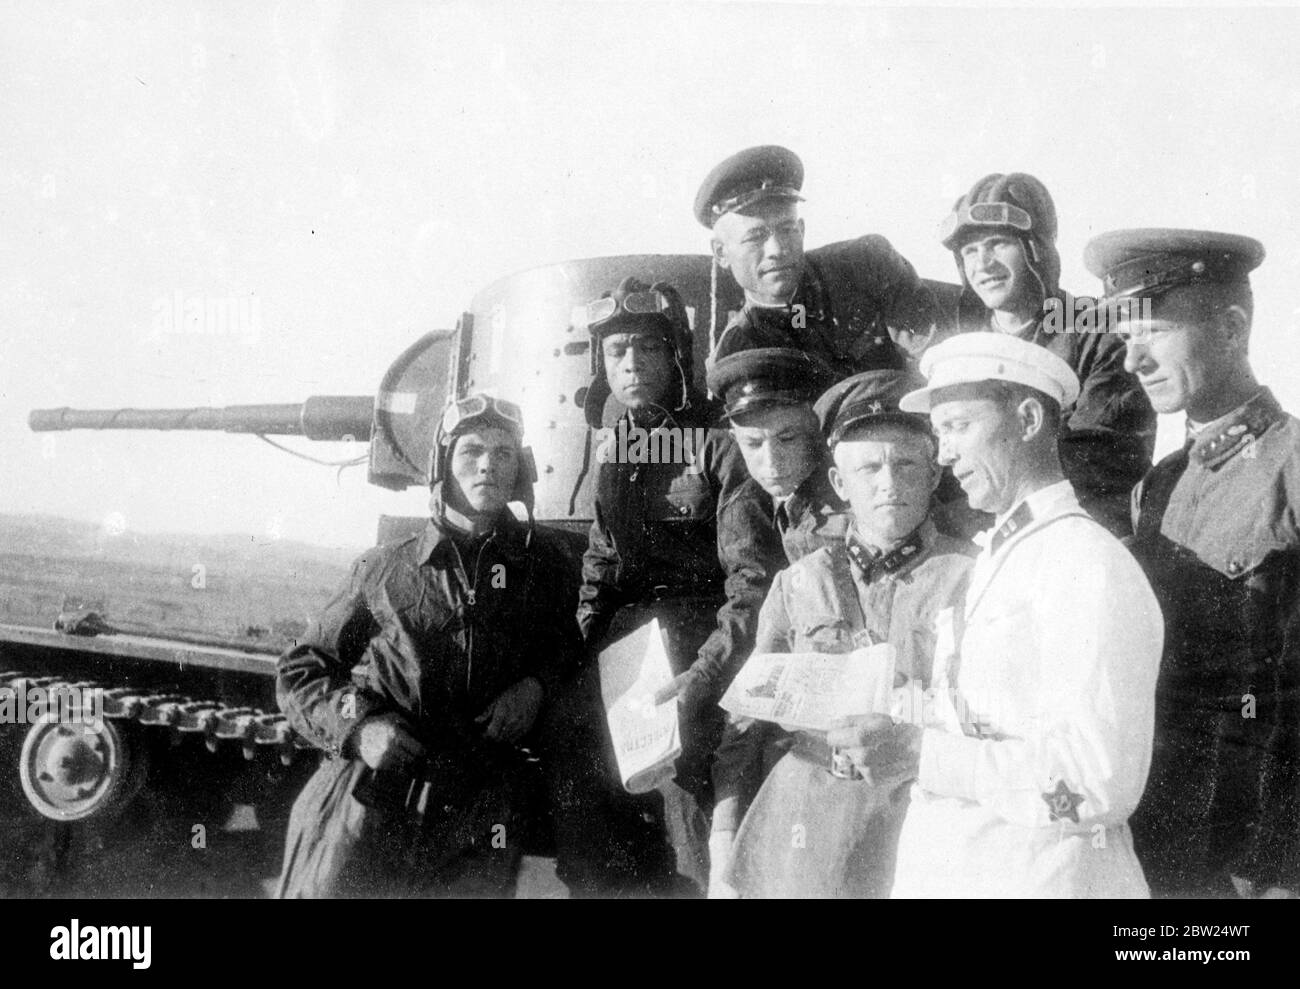 Erste Bilder von der Front der Sowjetischen - Mandschukuo. Dieses Bild ist das erste, das von der sowjetischen Manchukuo-Front kommt, wo es heftige Kämpfe zwischen den sowjetischen und japanischen Kräften gegeben hat, und zeigt einen sowjetischen Panzerkommandanten, der als Männer vorliest, eine Zeitungsanzeige über den Waffenstillstand, den die beiden Grafschaften vereinbart haben. Bis 21. August 1938 Stockfoto